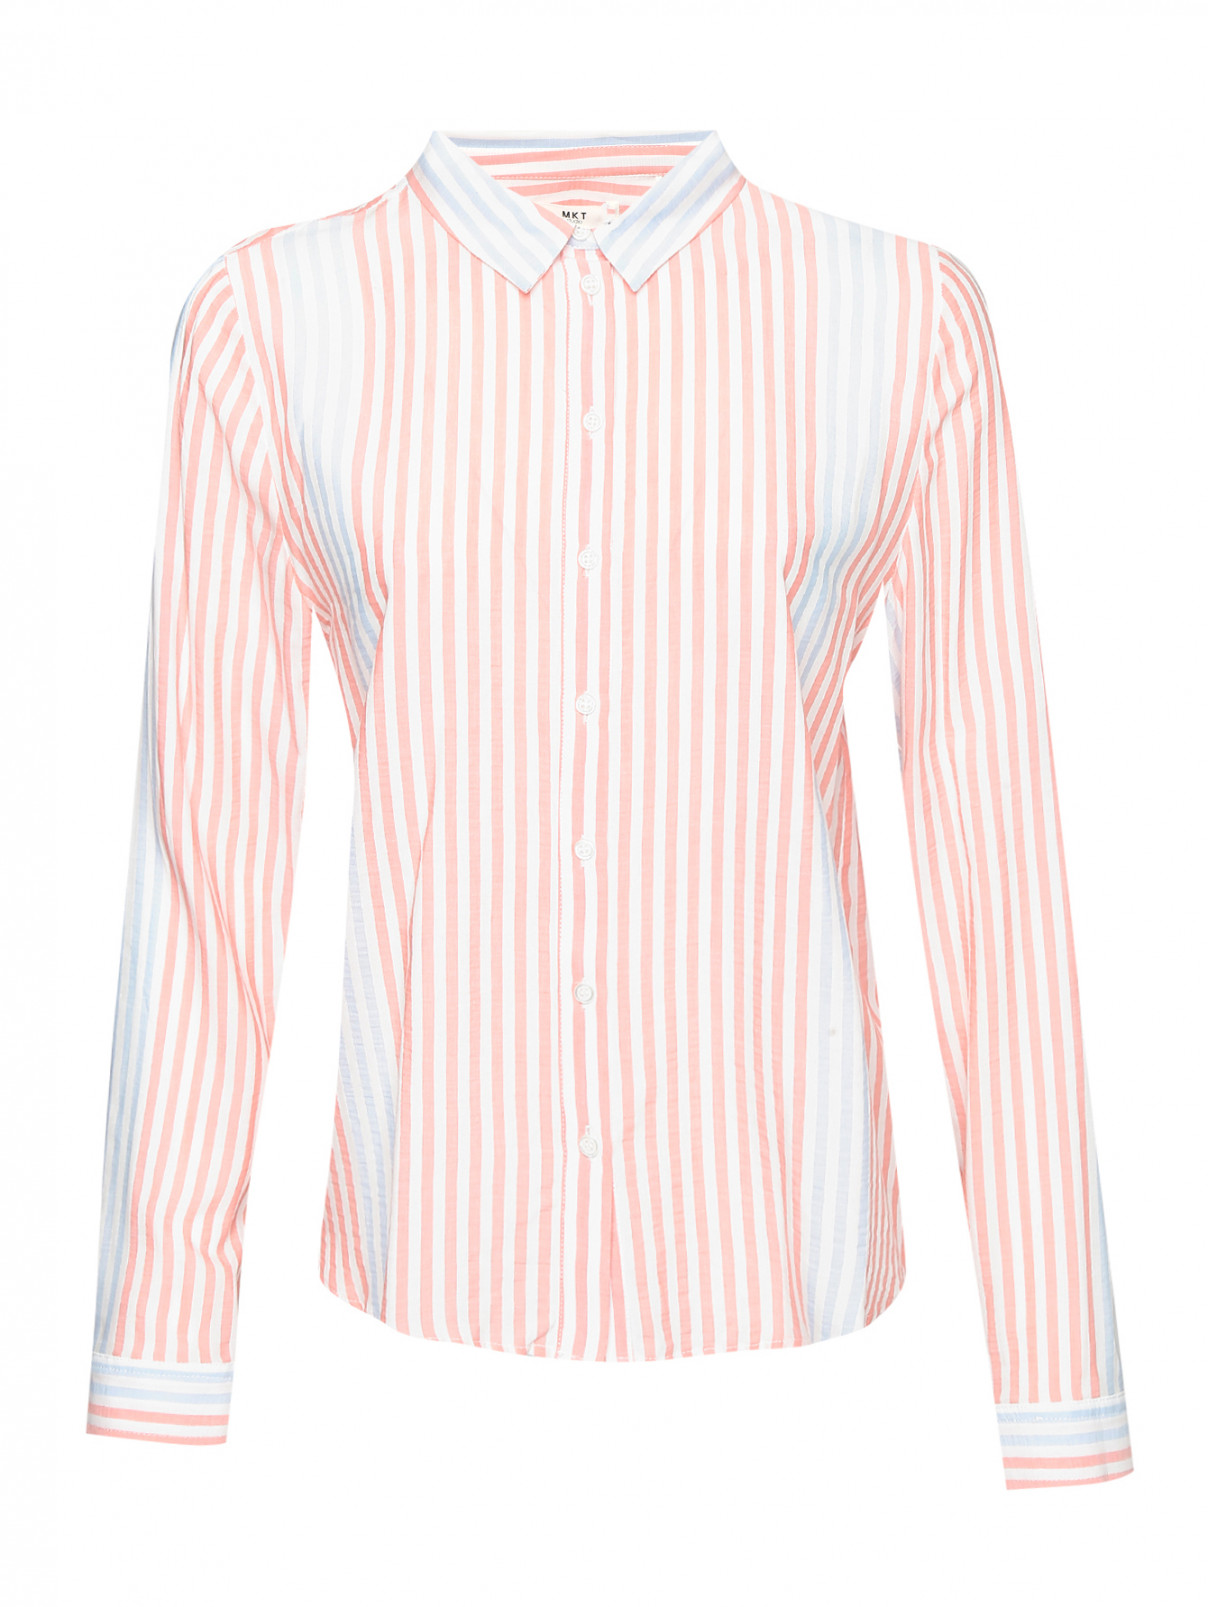 Рубашка с узором полоска MKT Studio  –  Общий вид  – Цвет:  Узор